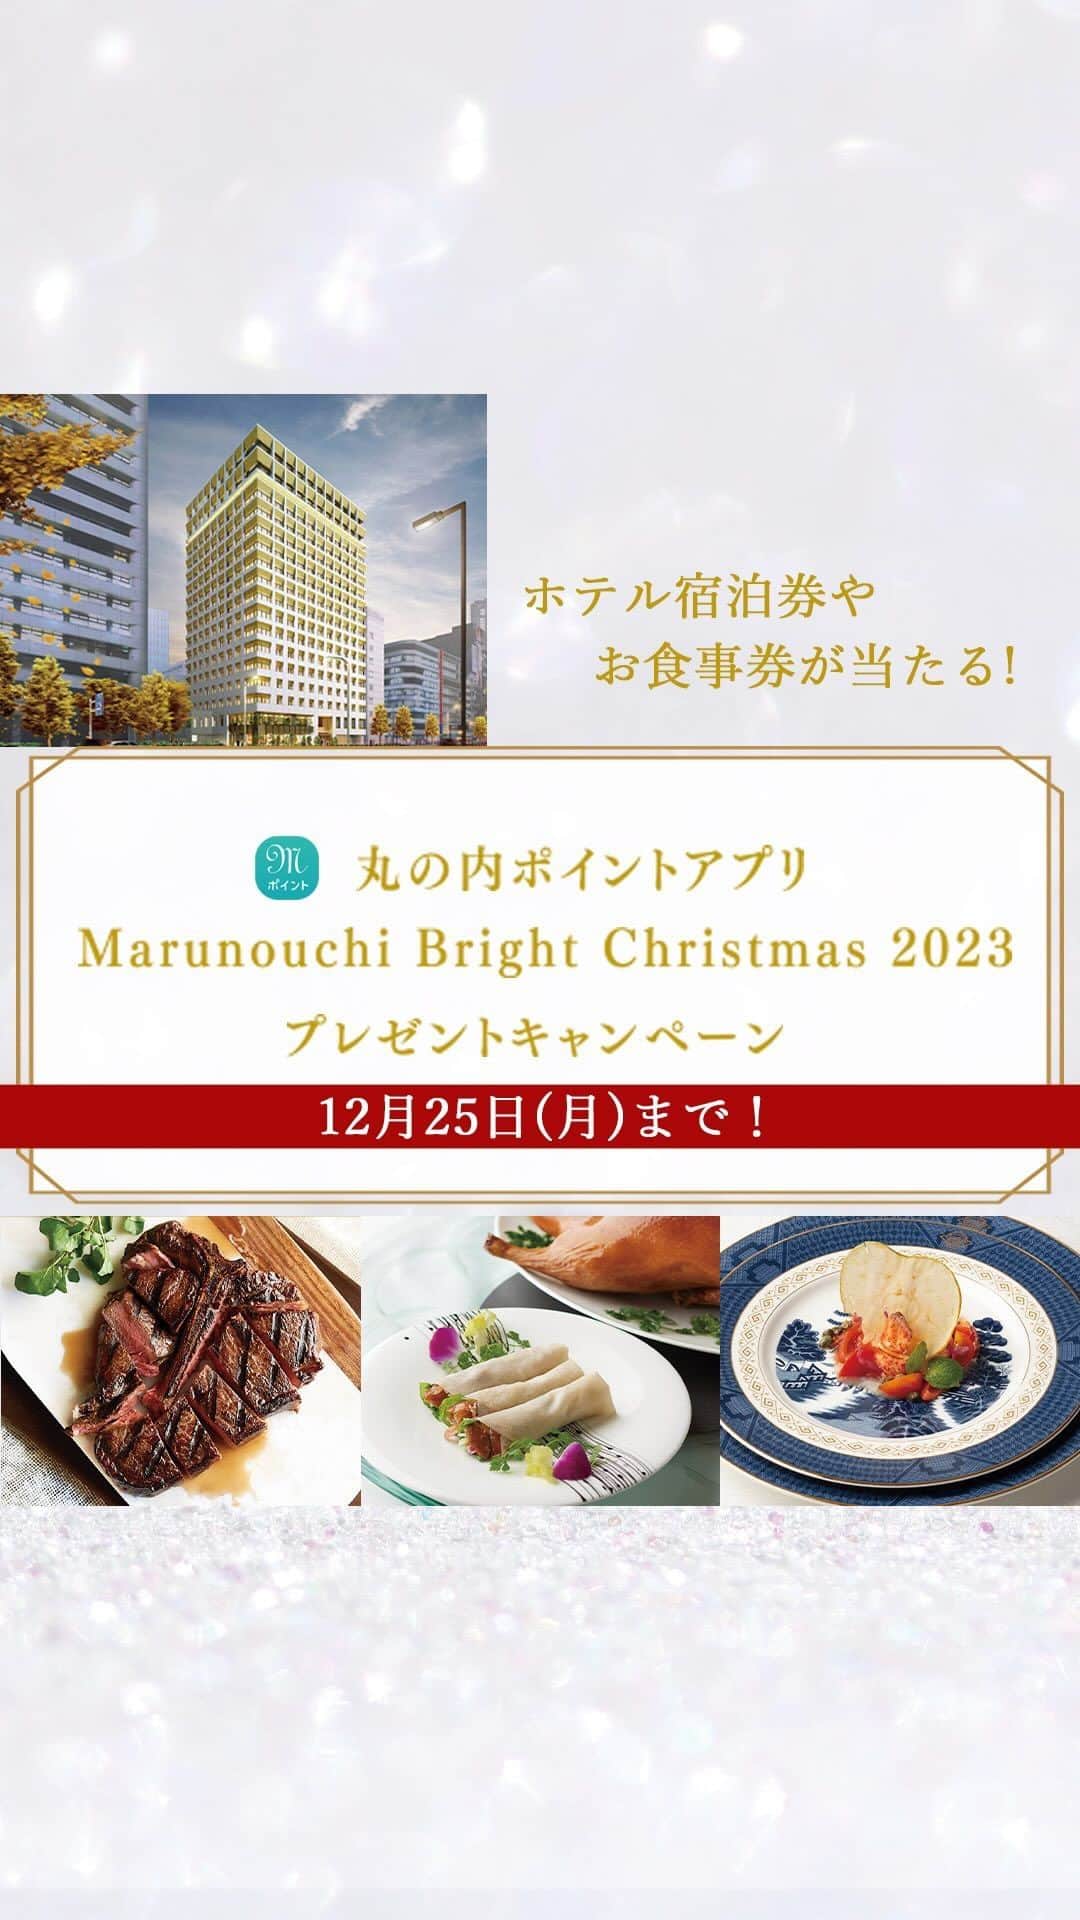 Marunouchi Paperのインスタグラム：「【12月25日（月）まで！ホテル宿泊券やお食事券が当たる♪丸の内ポイントアプリプレゼントキャンペーン】 抽選で嬉しいクリスマスプレゼントが当たる、「丸の内ポイントアプリ Marunouchi Bright Christmas 2023 プレゼントキャンペーン」を開催中♪  12月25日（月）までの期間中に、丸の内ポイントアプリでエントリーし、対象店舗で税込10,000円以上ご利用いただくと、エントリーが完了。  イルミネーション巡りやショッピング、お食事を楽しみながら、ぜひ参加してみて♪  ◆エントリー方法 ①丸の内ポイントアプリをダウンロード ②丸の内ポイントアプリでエントリー ③対象店舗で合計税込10,000円以上ご利用 ※丸の内ポイントアプリの事前ダウンロード及びエントリーが必要です。  ◆プレゼント内容 【特別賞】 ザ ロイヤルパークホテル 銀座6丁目（2024年5月開業） スイート ペア宿泊券（朝食付き）1名様 【スペシャル賞】 丸の内プレミアムレストラン ペアお食事券 10名様 ・丸ビル36F 全聚徳 丸ビル店 ×3名様 ・東京ビル TOKIA1F byebyeblues TOKYO ×3名様 ・二重橋スクエア2F Morton's The Steakhouse Marunouchi ×4名様 【丸の内ポイントアプリ賞】 ・丸の内ポイントアプリクーポン10,000円分 ×100名様 ・丸の内ポイントアプリクーポン5,000円分 ×1,000名様 ・丸の内ポイントアプリクーポン1,000円 分×2,000名様  【応募期間】2023年11月16日（木）～12月25日（月） ———————————————— 詳細は⇒ @marunouchi_paper プロフィールURLの丸の内ドットコムまたは、ストーリーズのリンクからご覧ください。 ————————————————  ※このキャンペーンはApple社が提供するものではありません  #marunouchibrightchristmas2023 #丸の内クリスマス #クリスマス #クリスマスデート #デートスポット #東京デート #デートプラン #丸の内仲通り #クリスマスの思い出 #お出かけスポット #休日の過ごし方 #週末の過ごし方 #東京観光 #丸の内ポイントアプリ #プレゼントキャンペーン #全聚徳 #byebyebluestokyo #mortonsthesteakhouse」